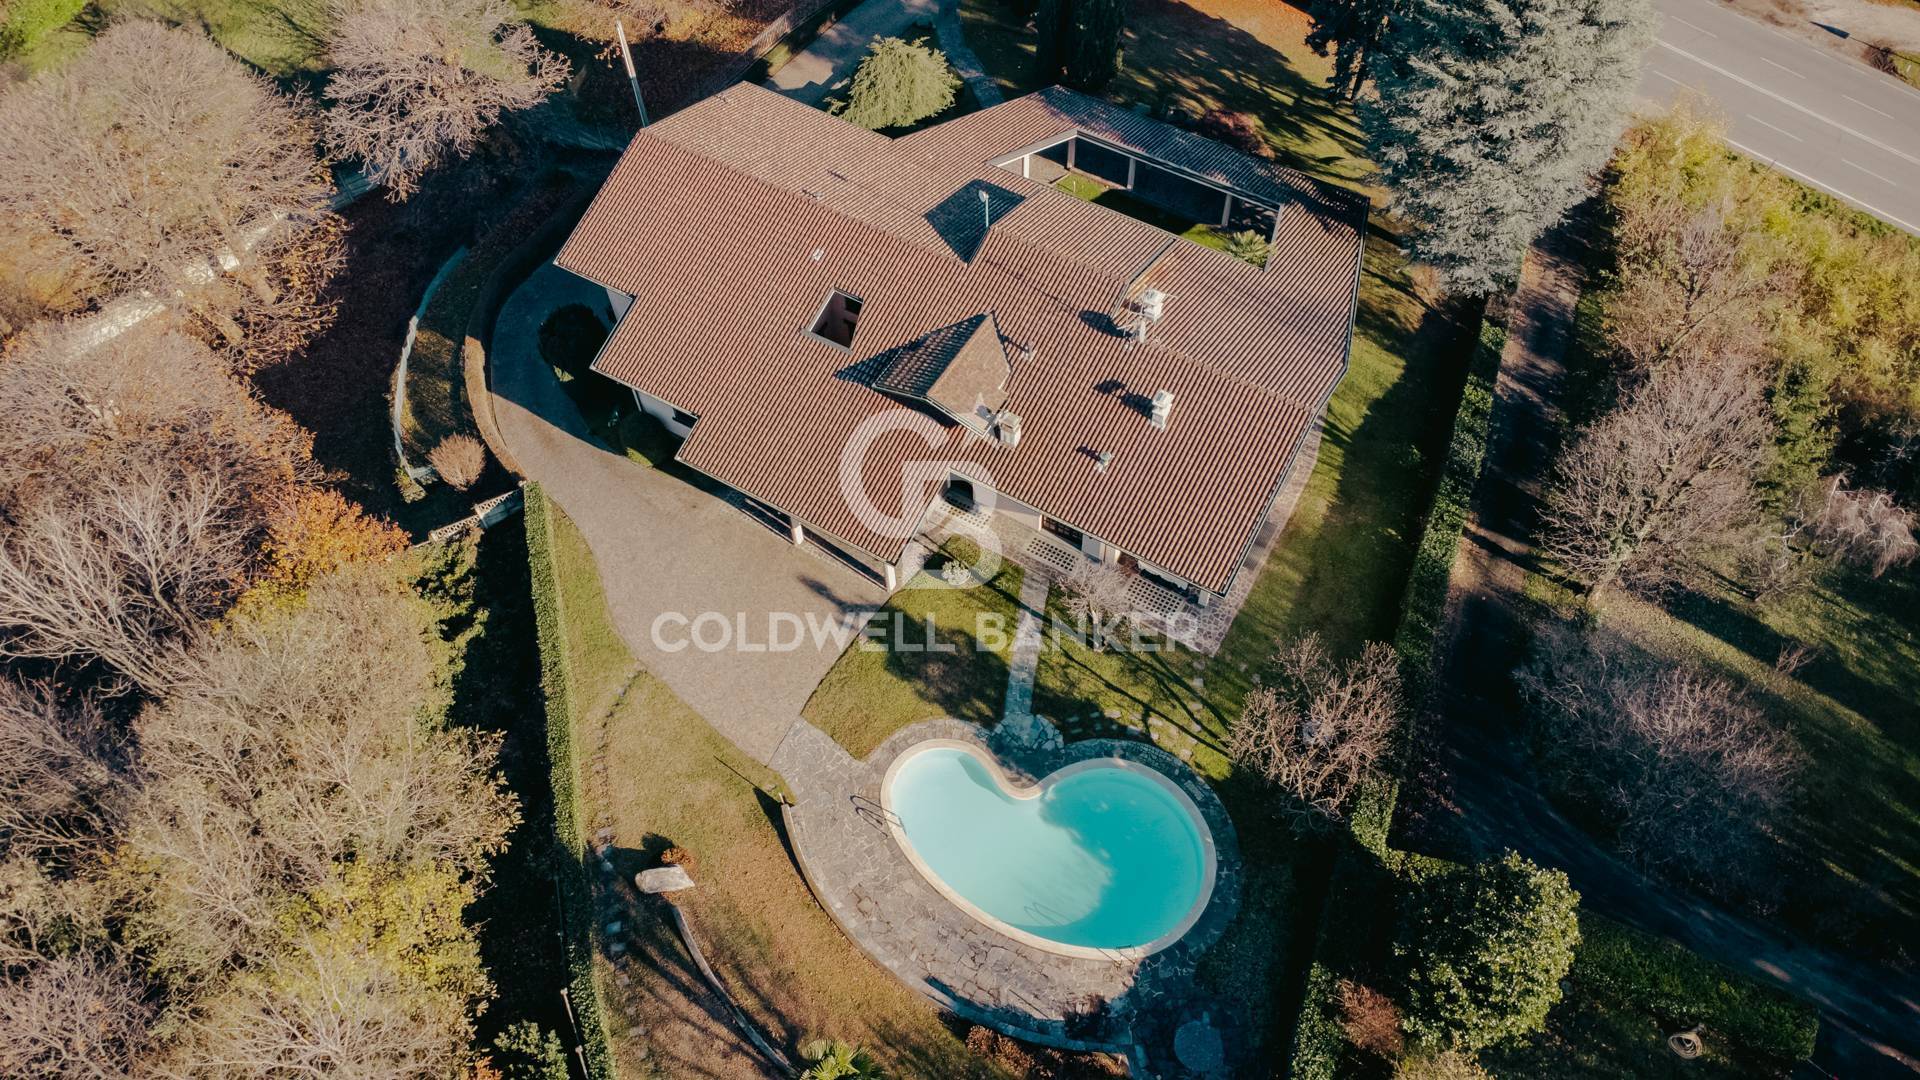 Villa in vendita a Inverigo, 10 locali, prezzo € 1.250.000 | PortaleAgenzieImmobiliari.it